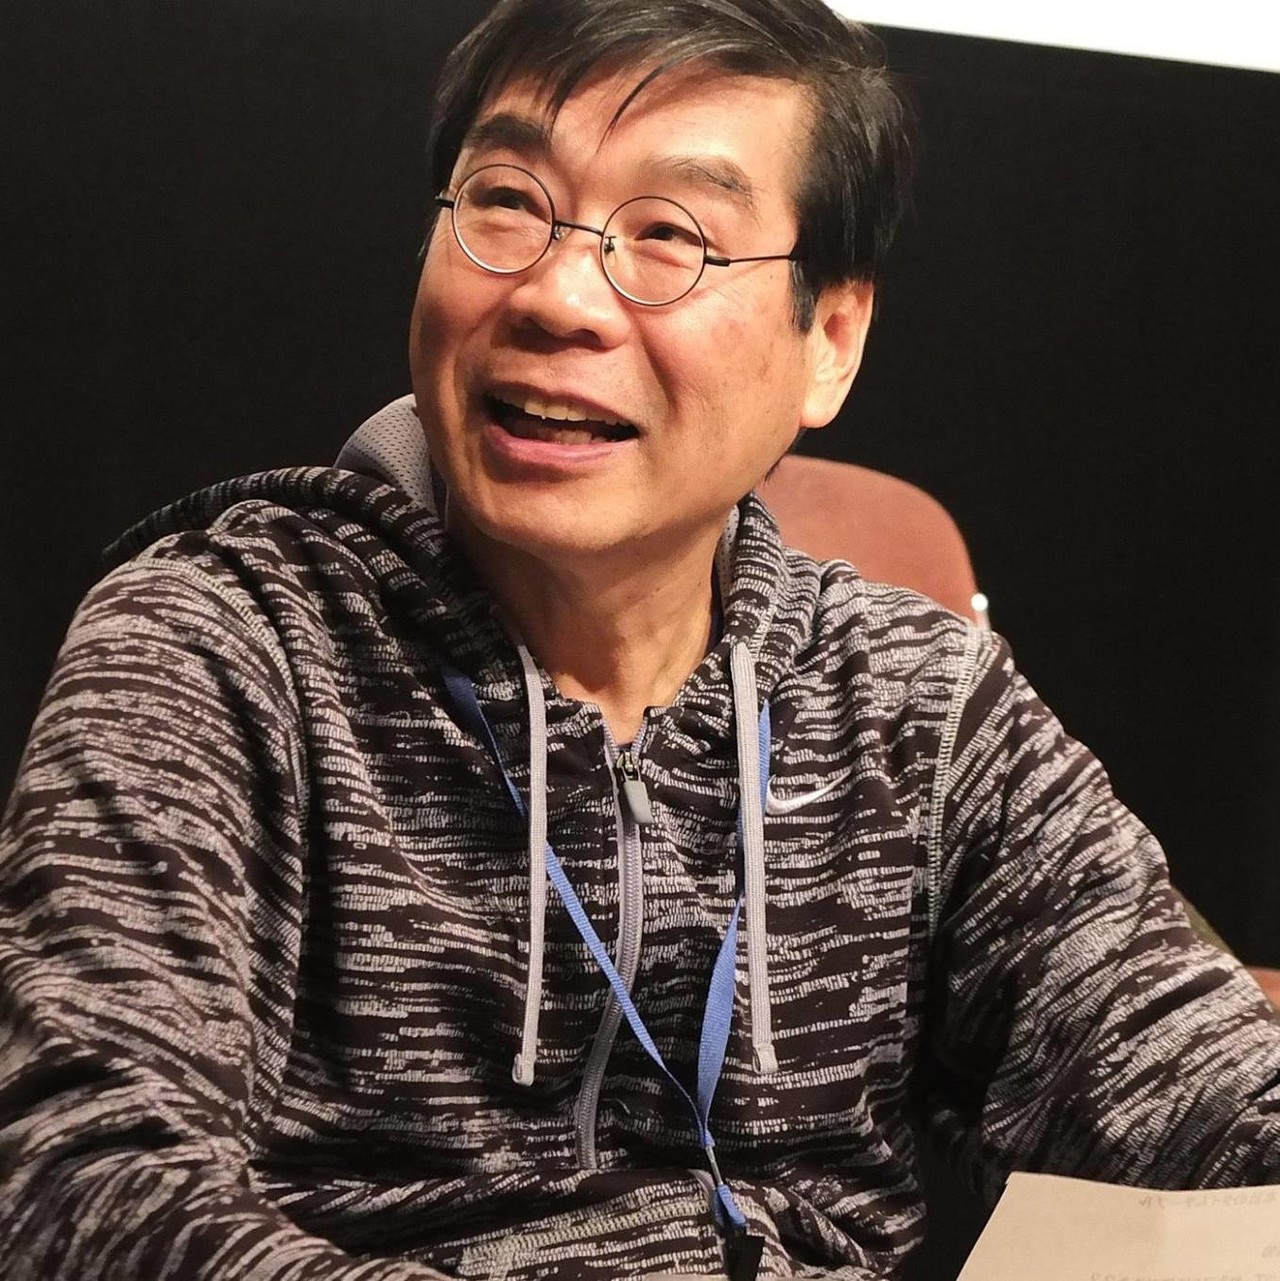 만 75세의 하라 카즈오 감독. 세계가 인정하는 다큐멘터리 거장인 그는 오사카예술대학 교수이자 시네마학원 원장으로 수많은 후진을 길러왔다. (c)FukyoFilms